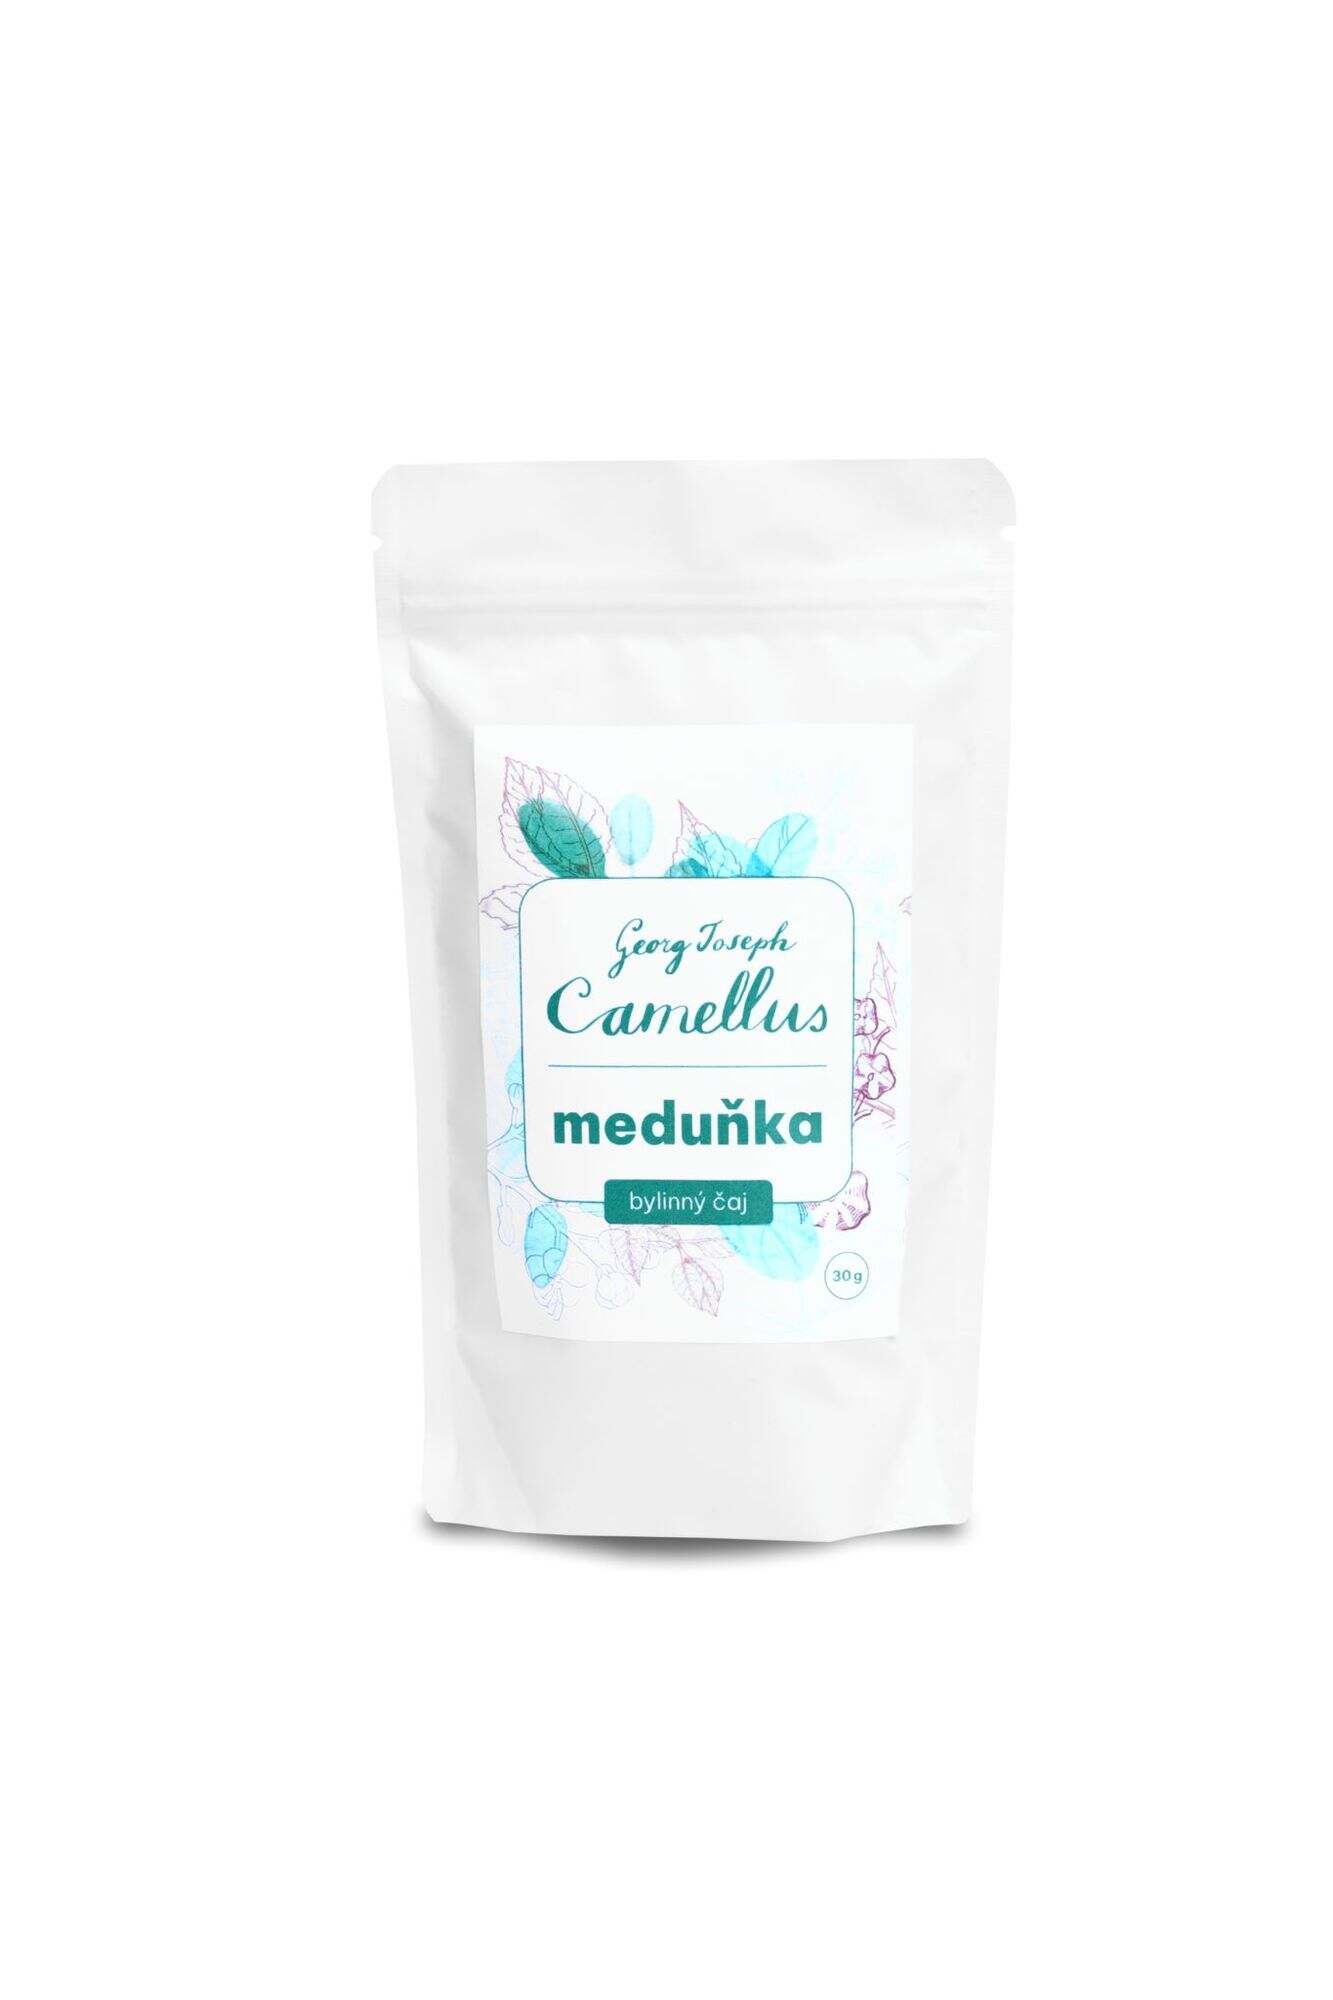 Čaj bylinný 30g Meduňka - Camellus - Camellus